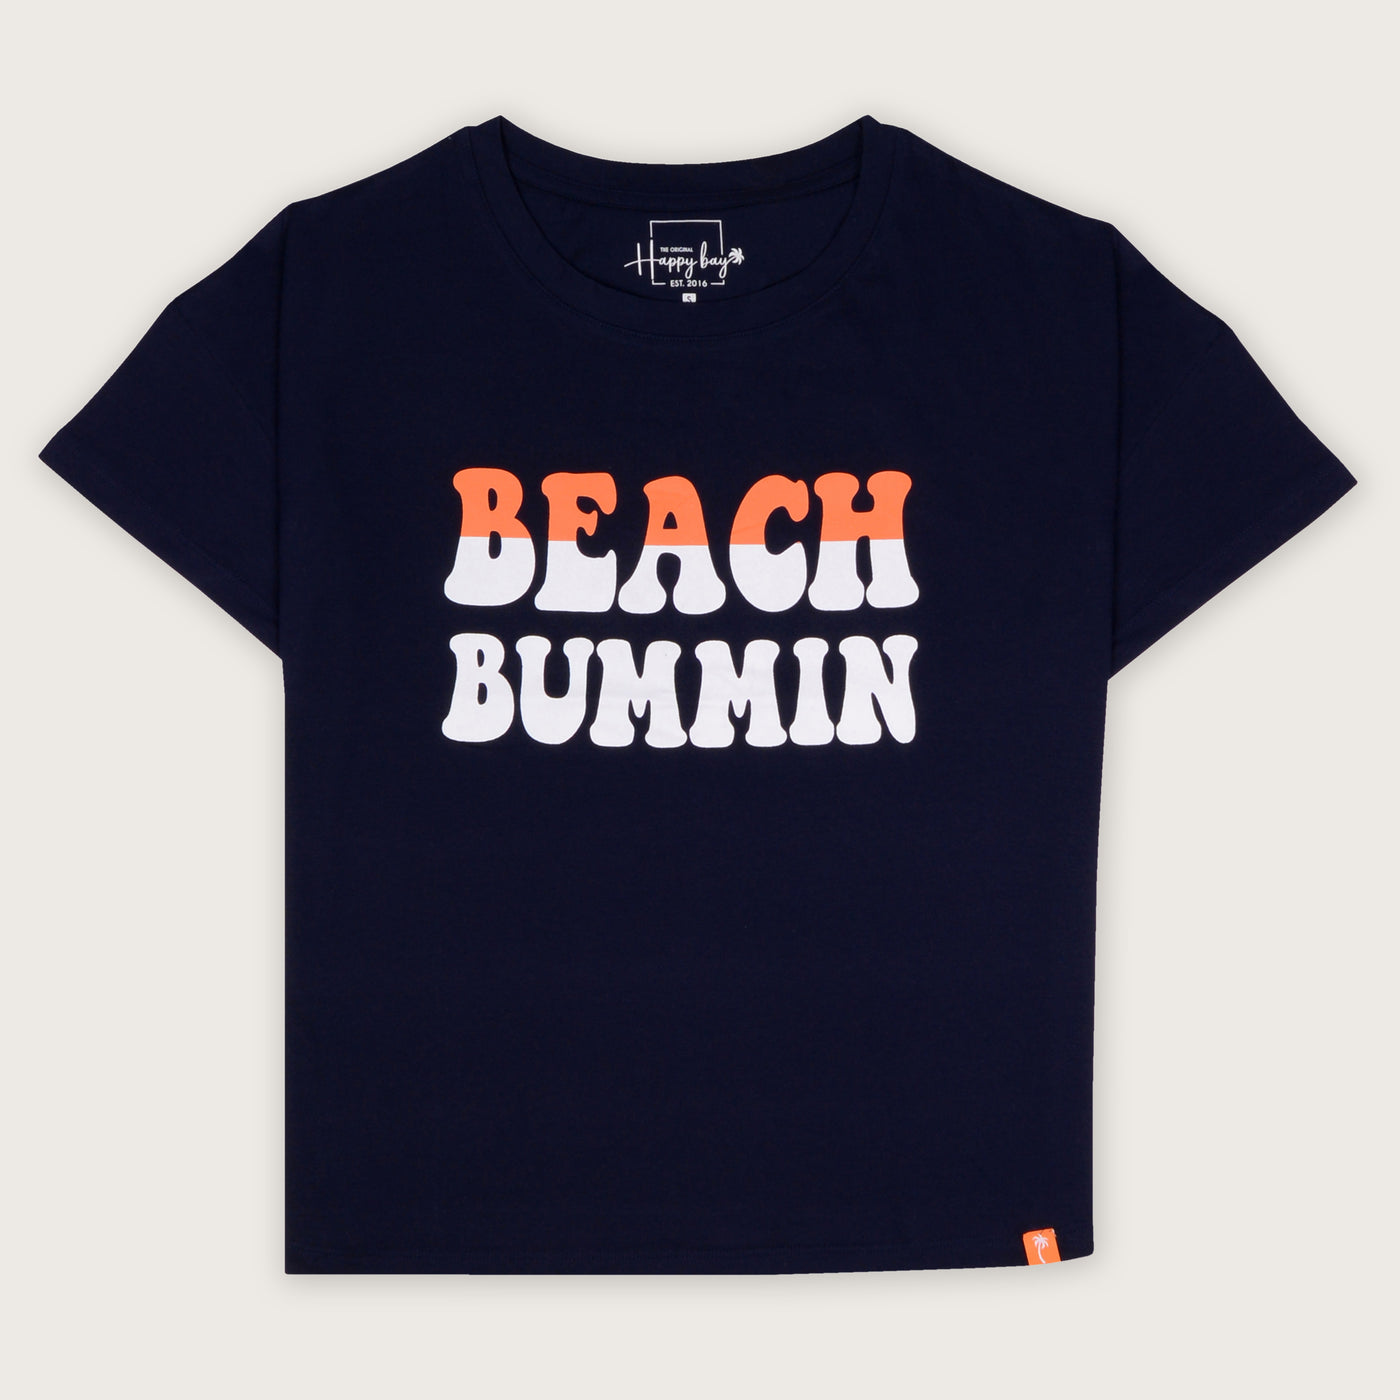 Buy now be a beach bum t-shirt